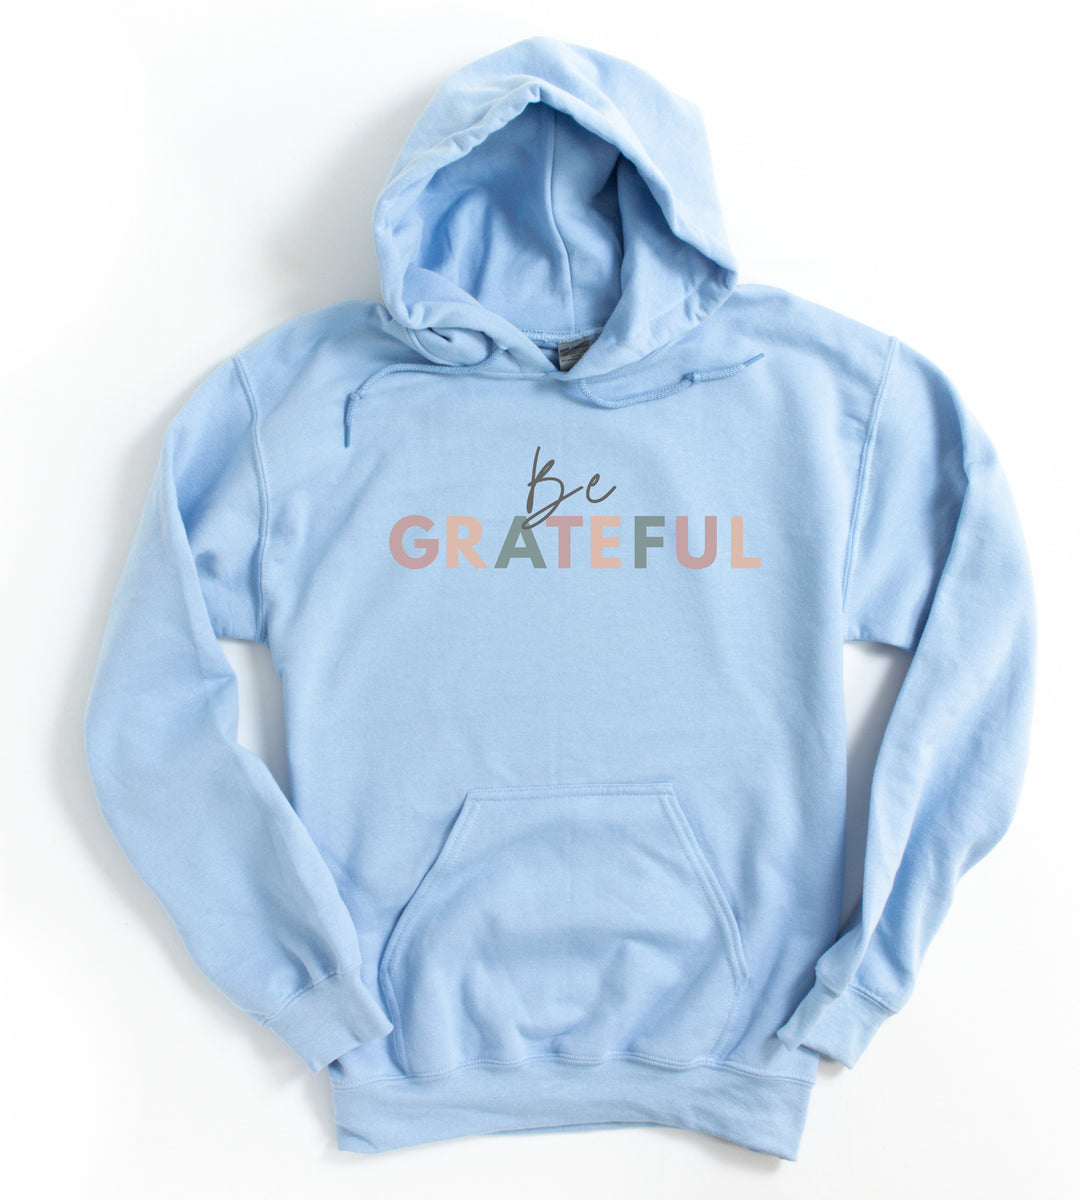 Be Grateful - Unisex Hoodie Sweatshirt - Joy & Country